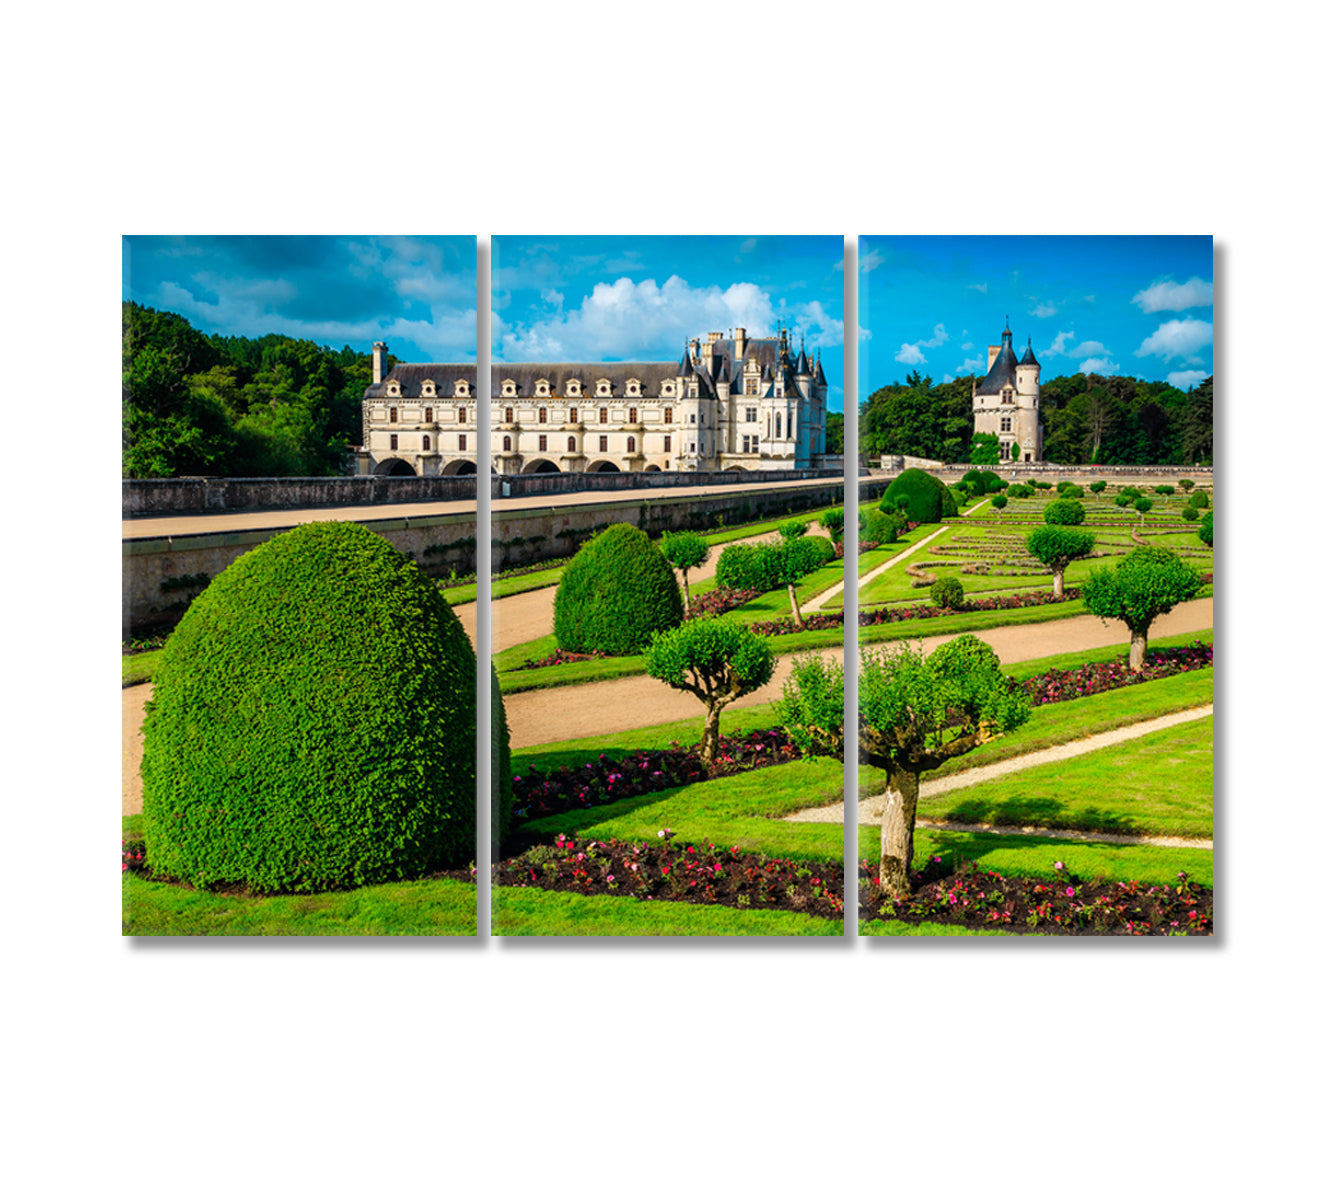 Chenonceau Castle Loire Valley France Canvas Print-Canvas Print-CetArt-3 Panels-36x24 inches-CetArt